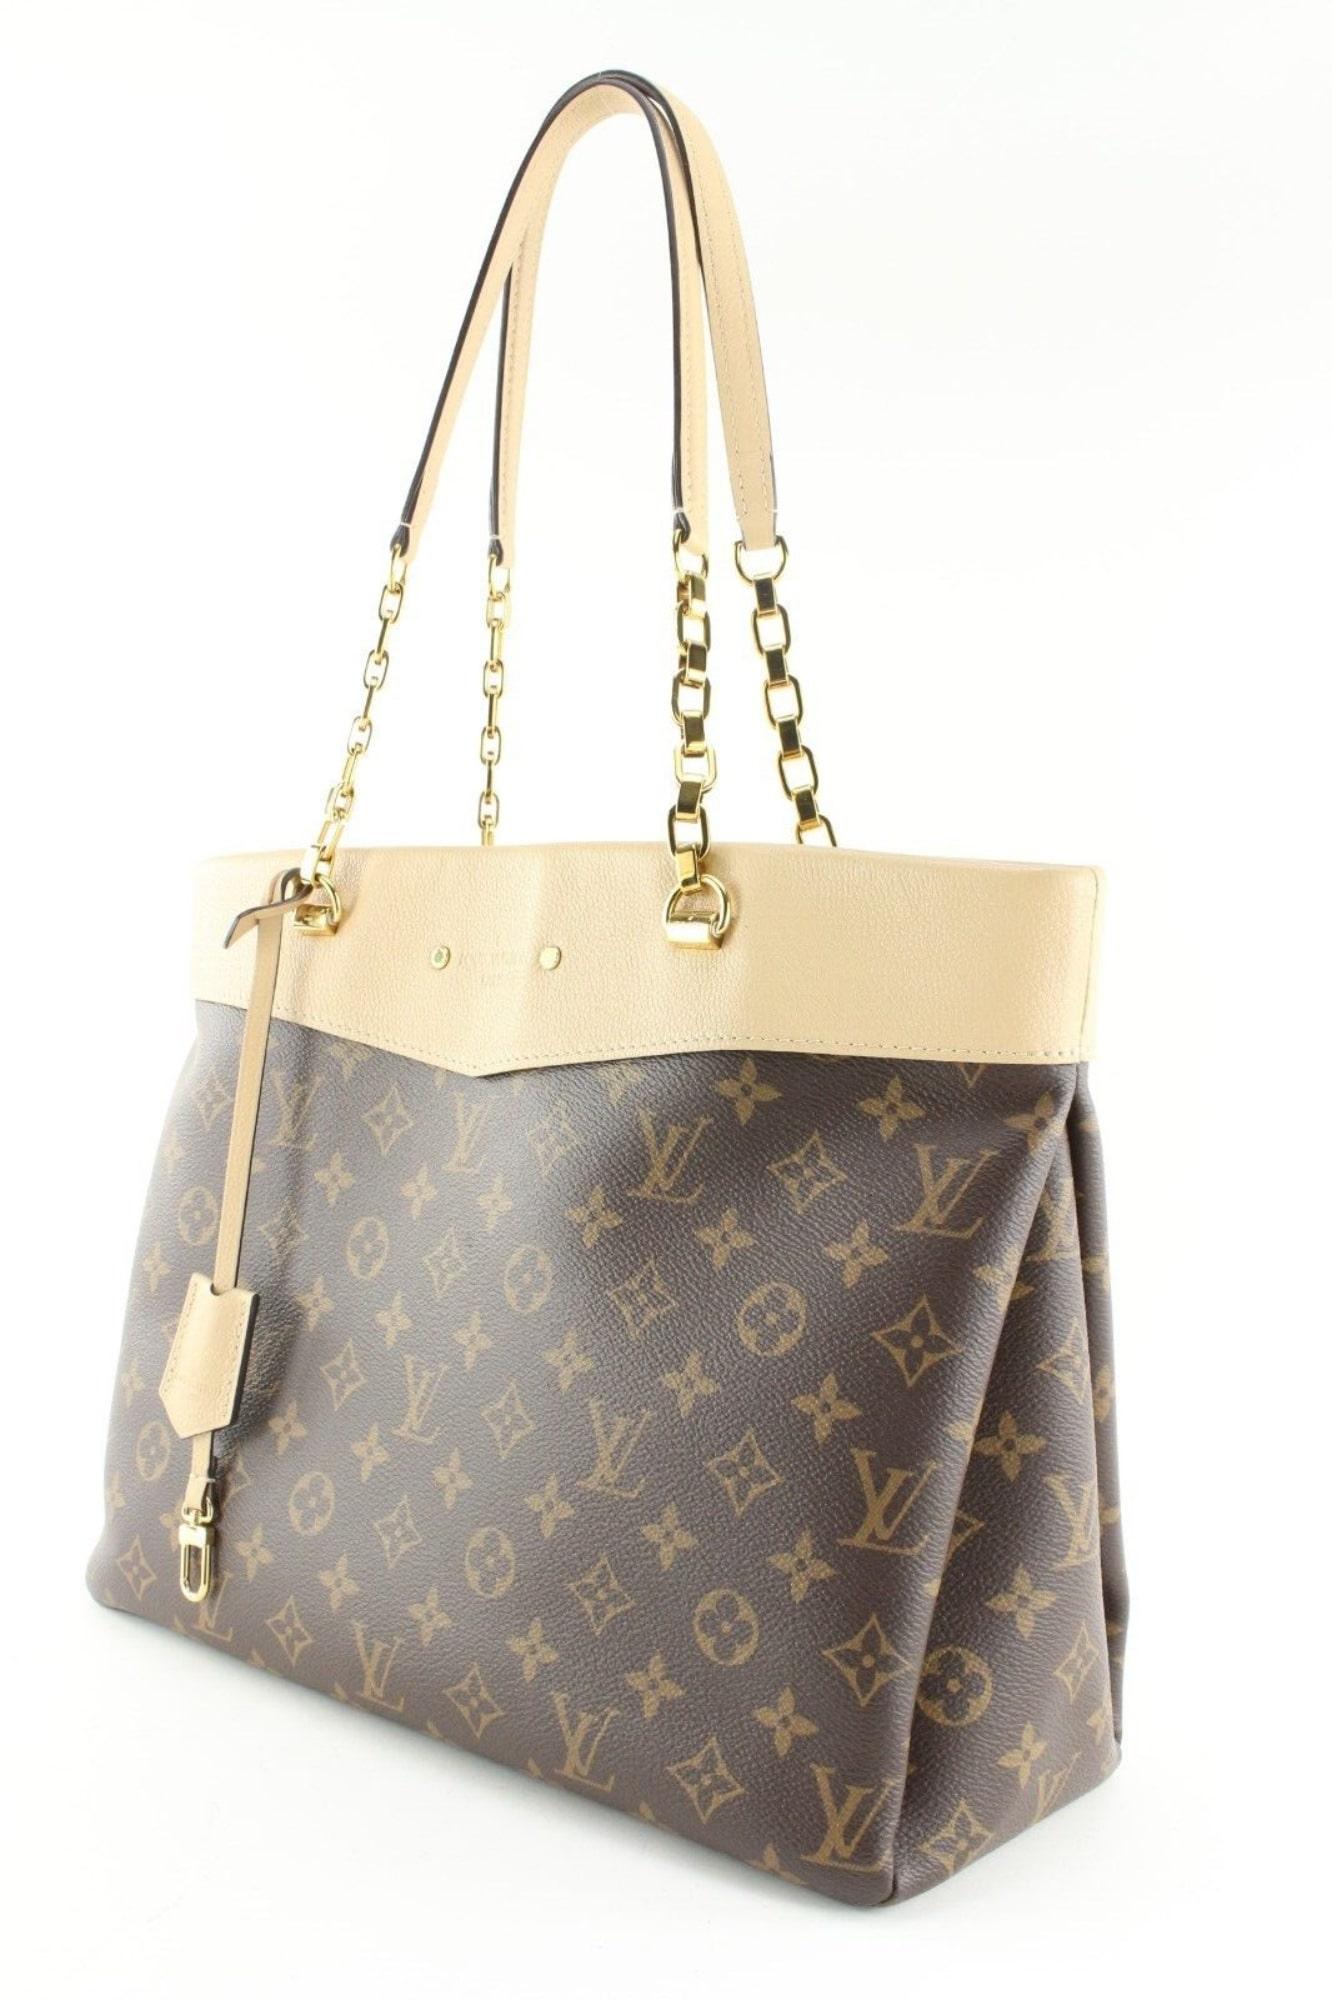 Louis Vuitton Monogram Pallas Shopper Dune Leather Chain Bag 4LK0502 For Sale 7